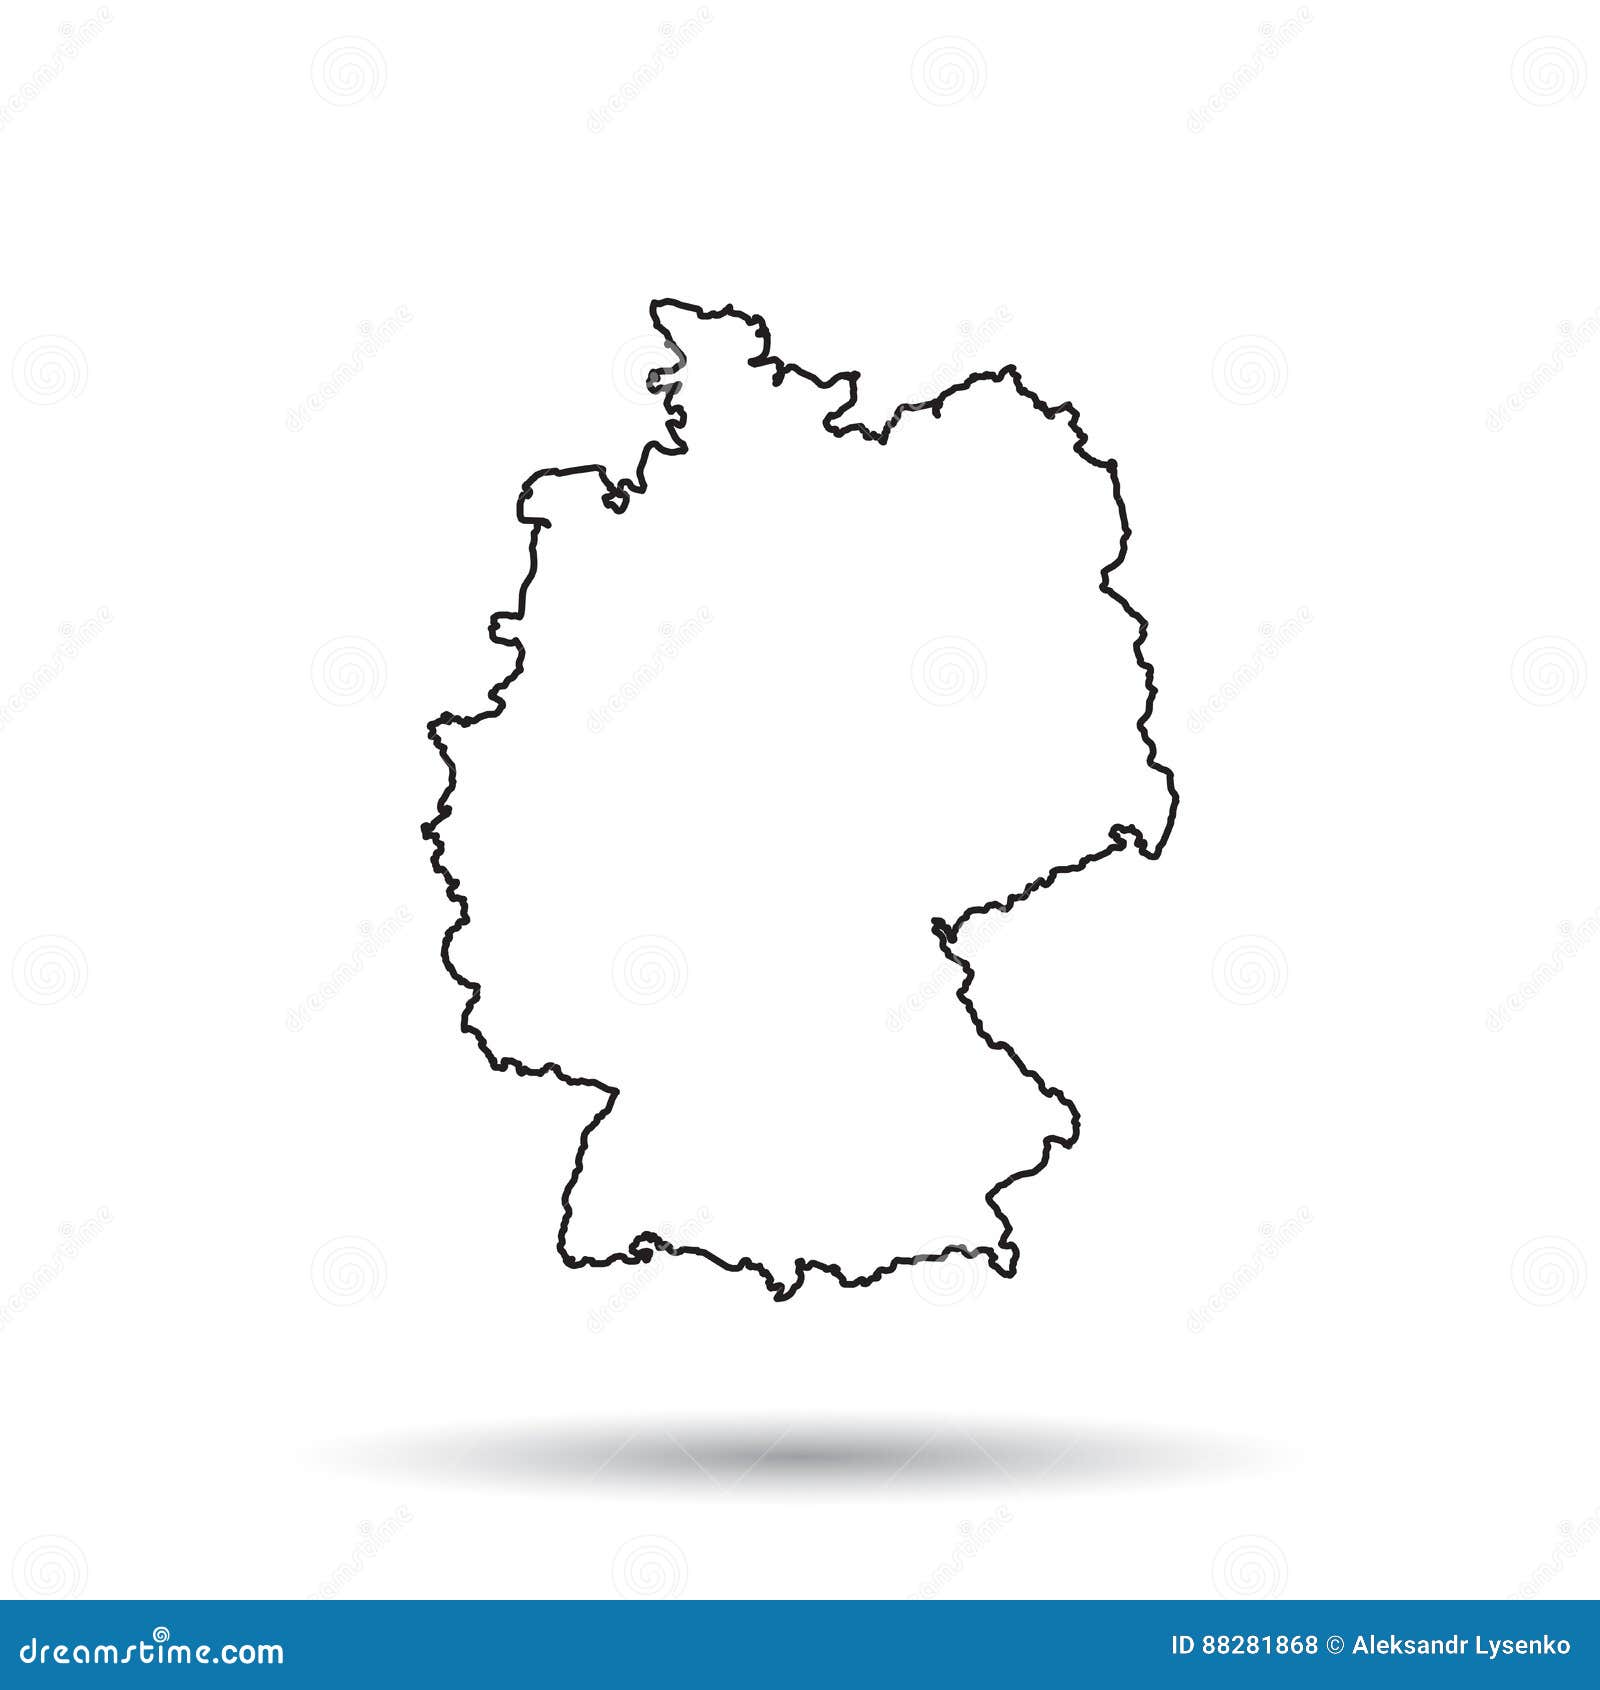 Deutschland karte linien S bahn